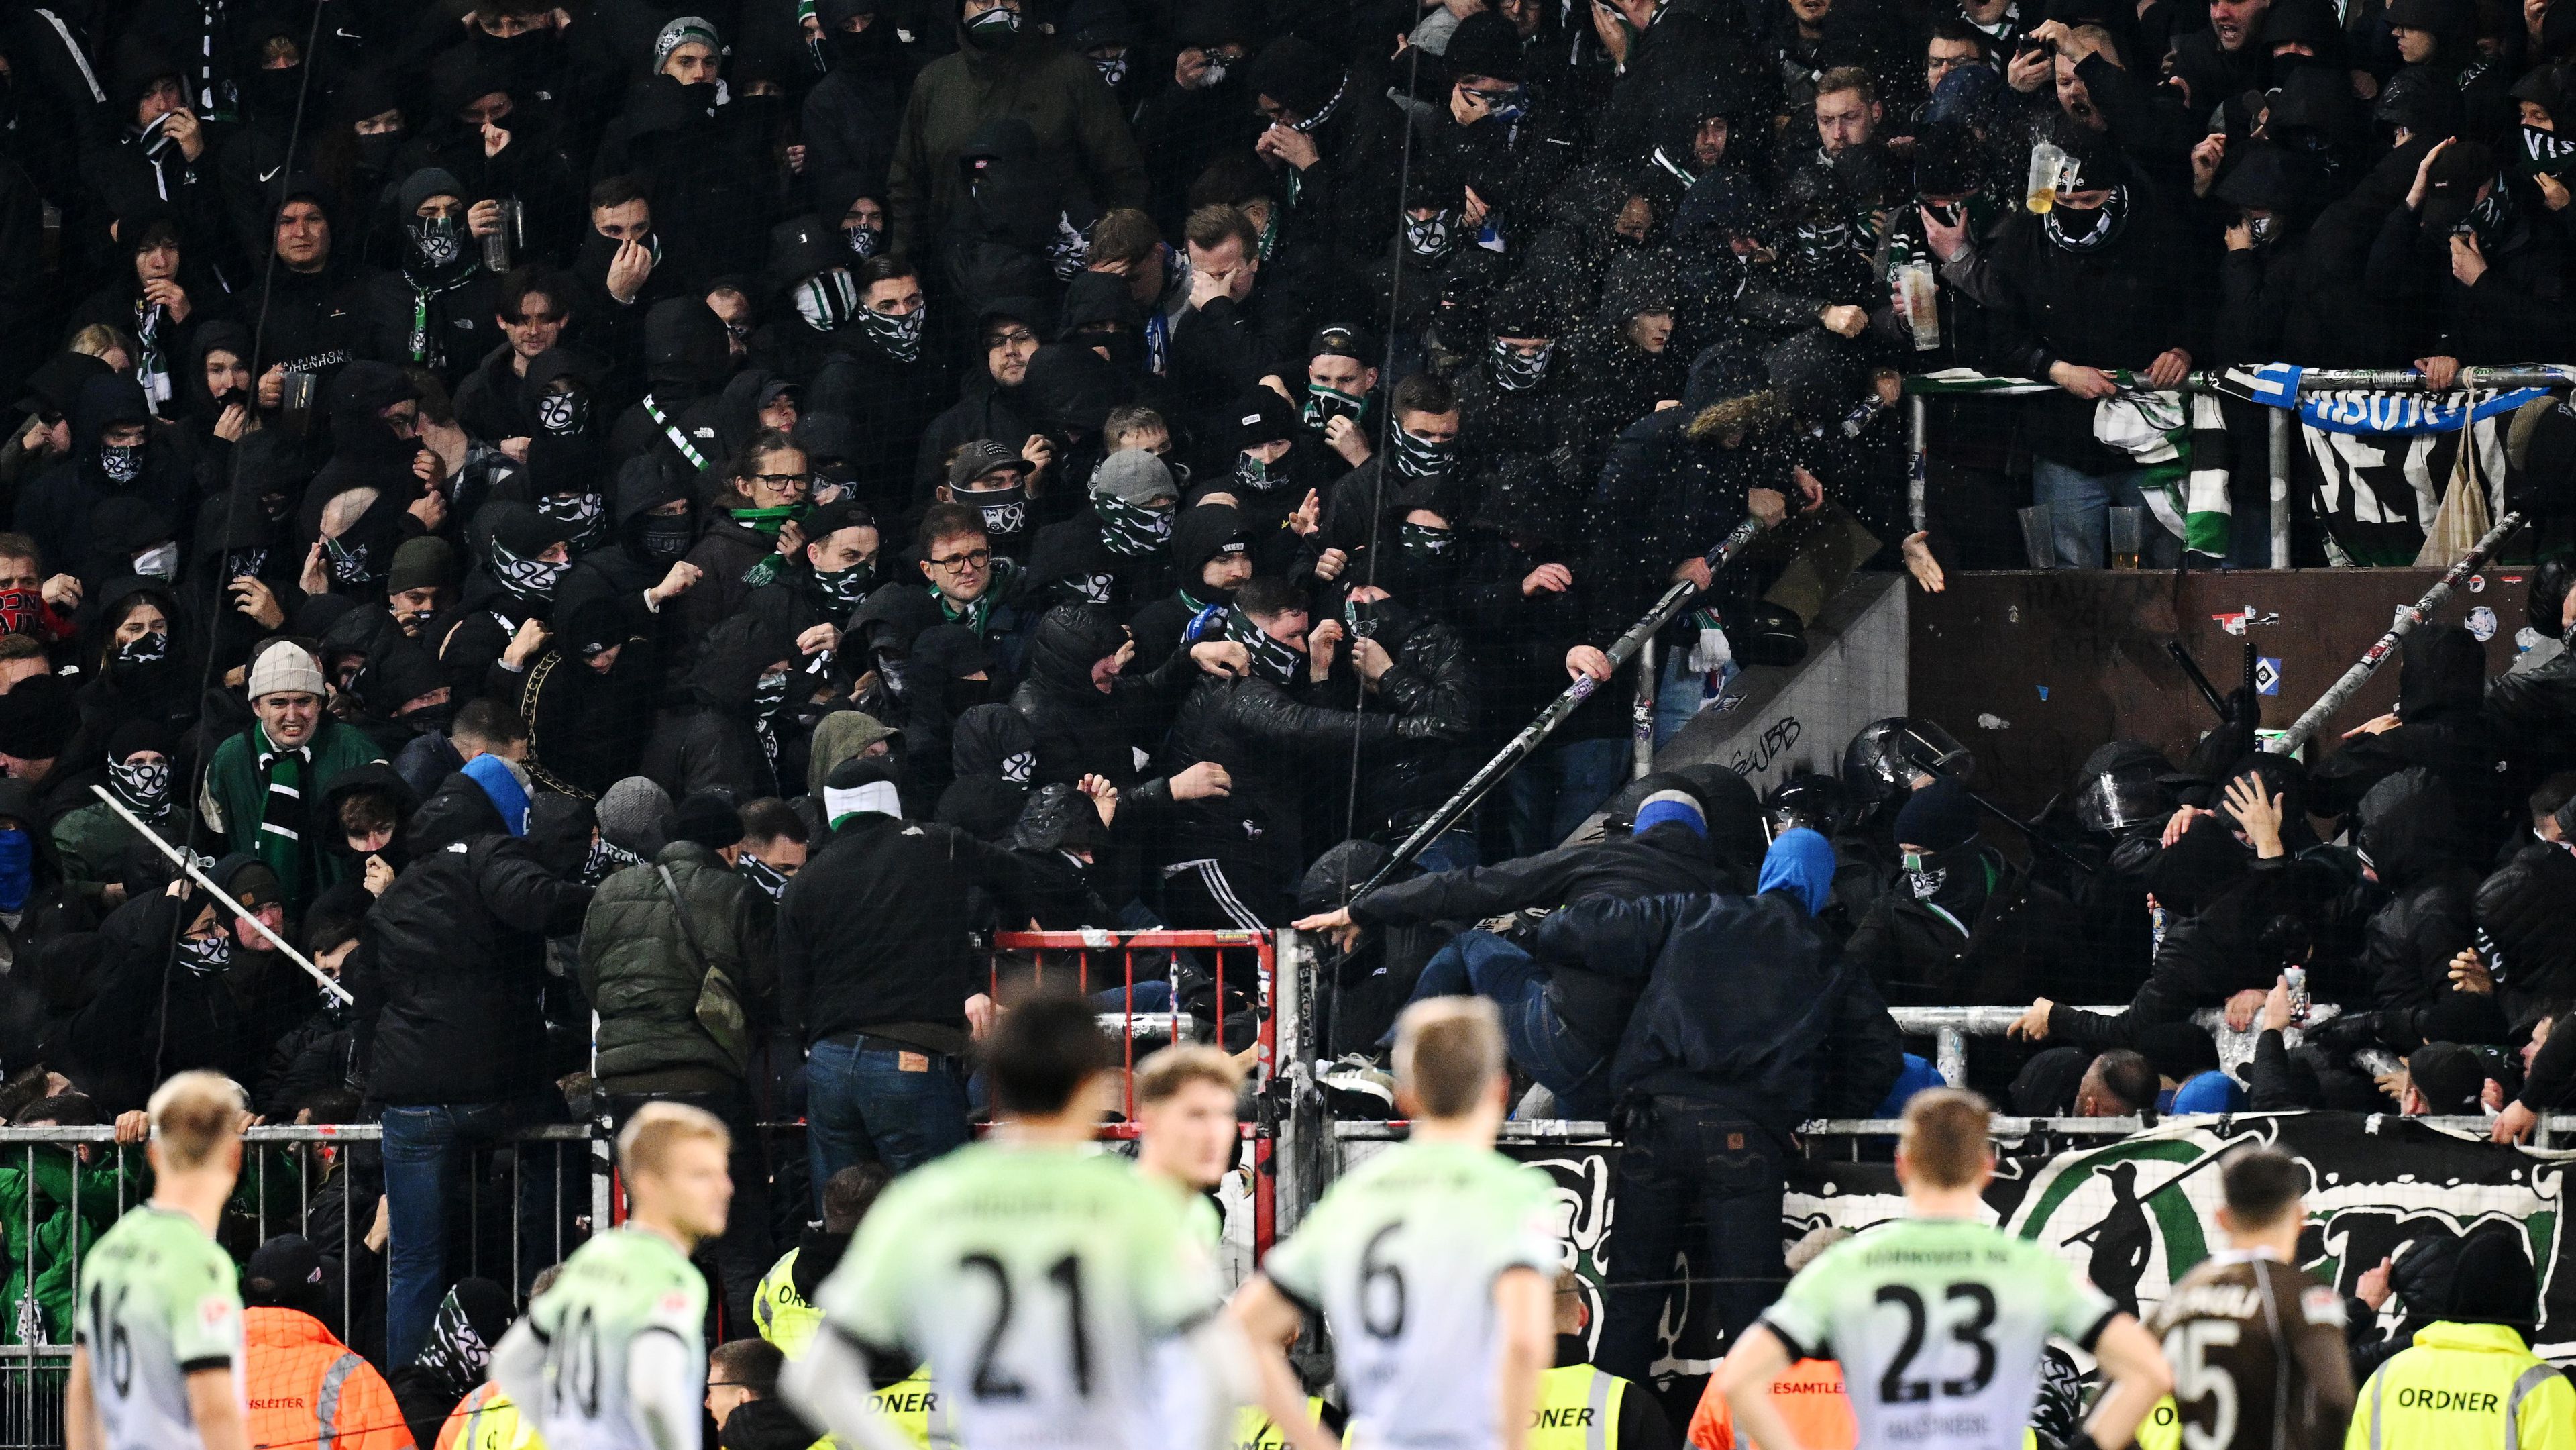 32-en megsérültek a Bundesliga 2 rangadóján, a szurkolók szerint a rendőrök hibáztak – videóval